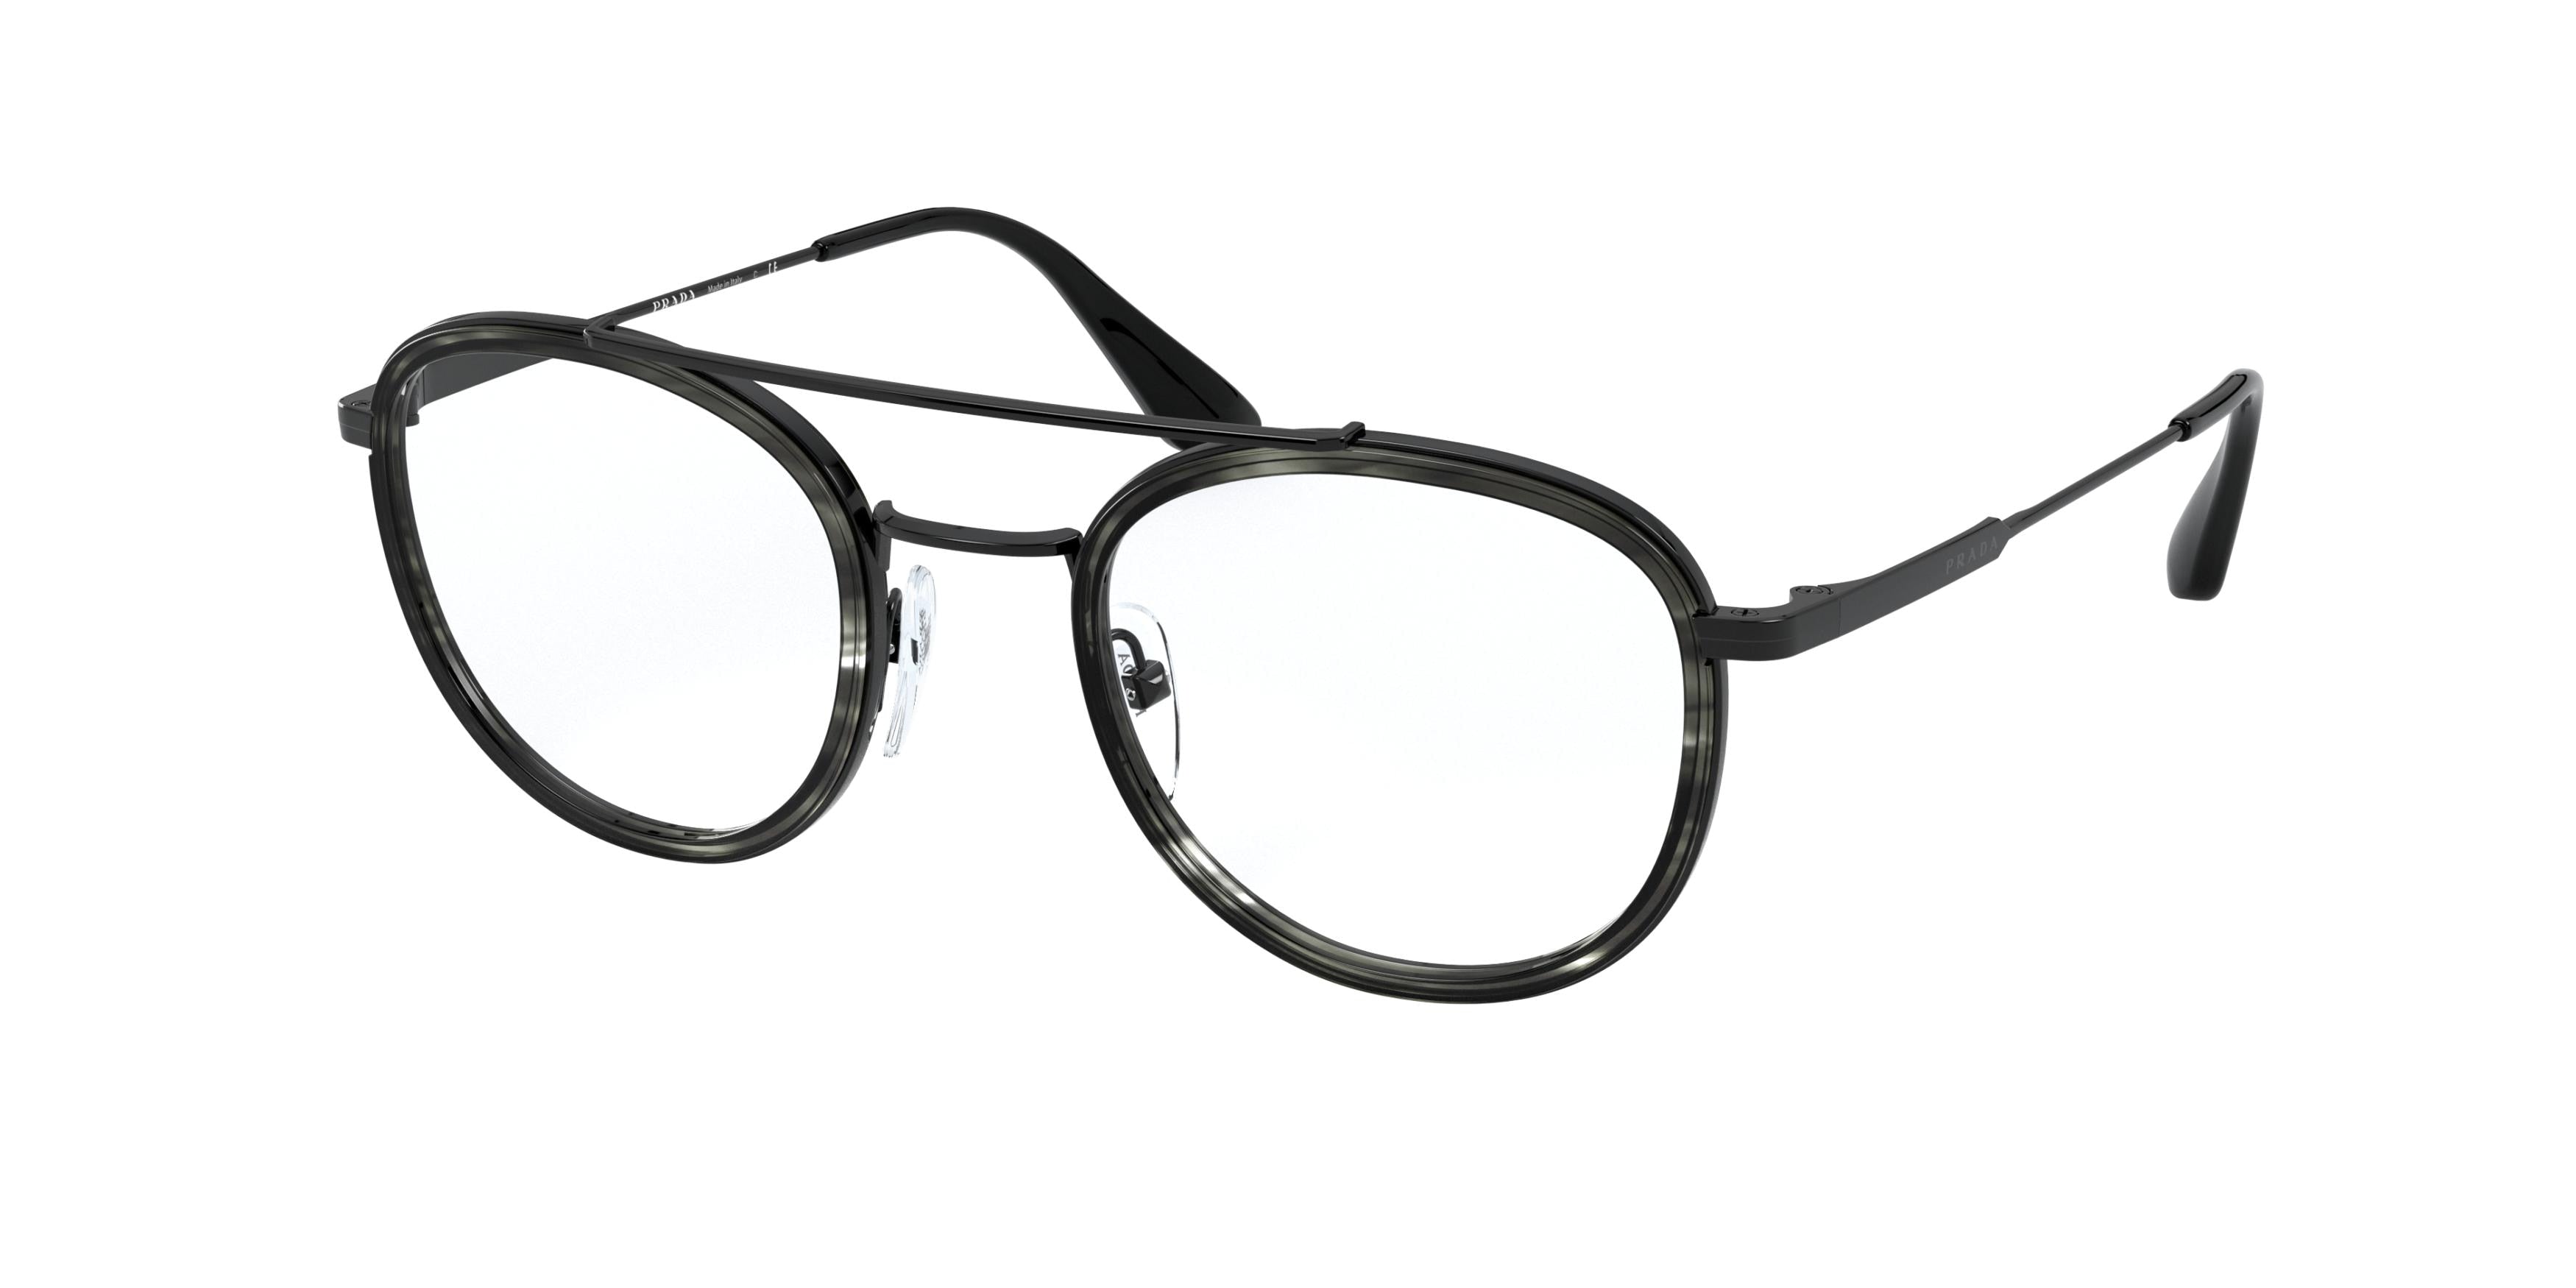 Prada PR66XV Phantos Eyeglasses  05A1O1-Striped Grey/Black 48-140-22 - Color Map Grey